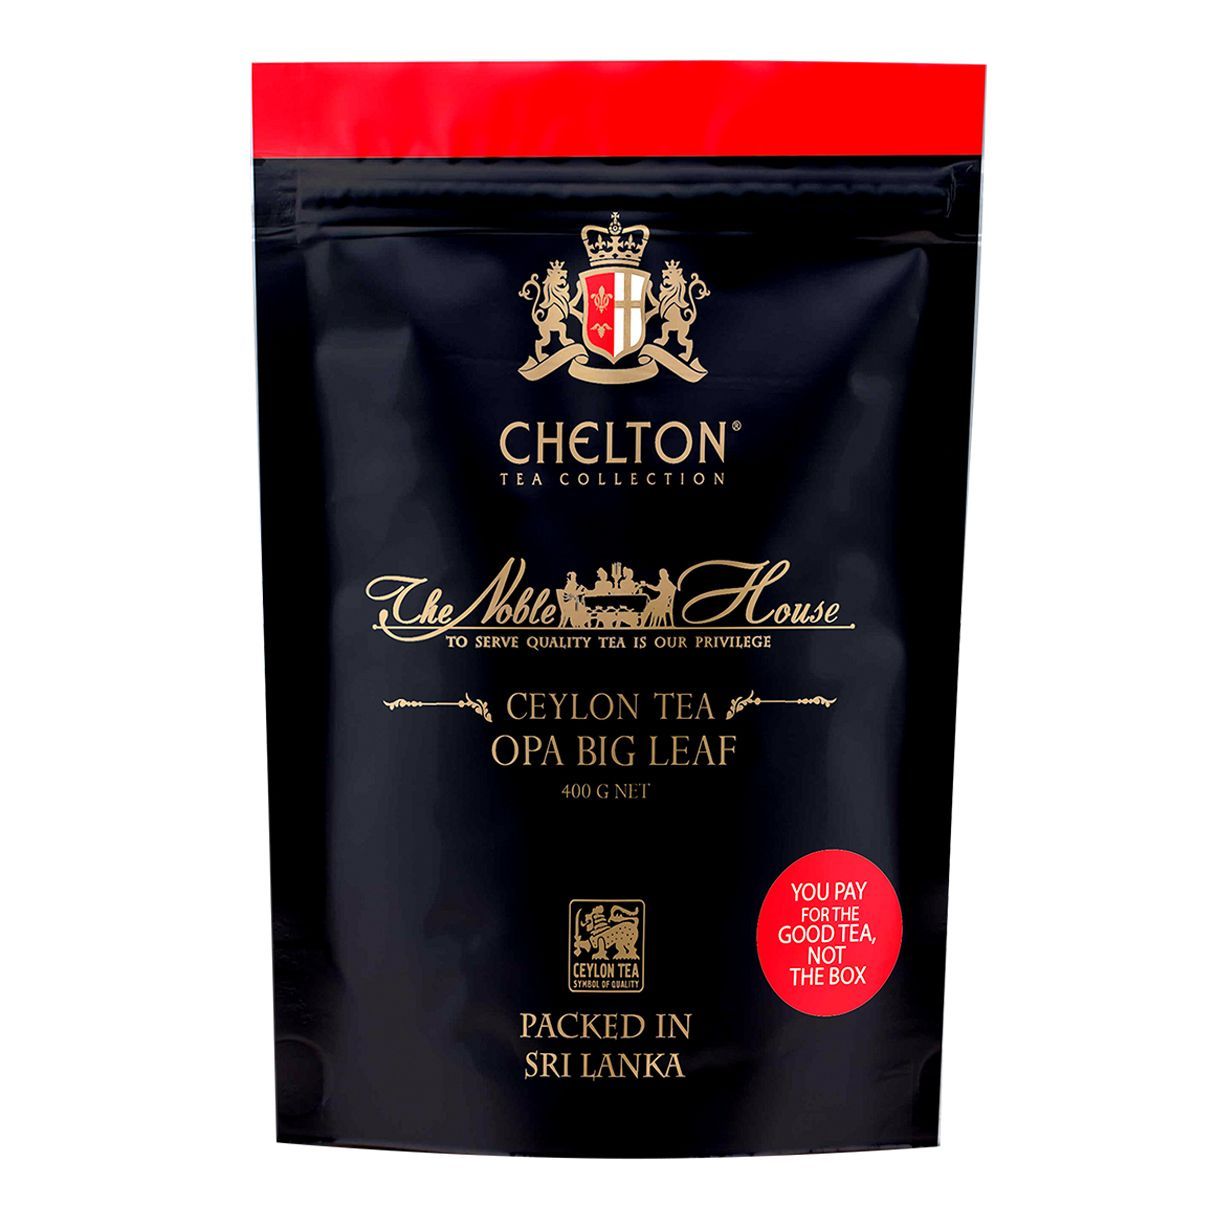 Черный чай opa. Чай Chelton благородный дом, FBOP черный листовой с типсами 500 гр. Чай Chelton super Pekoe. Челтон супер Пекое. Chelton чай благородный дом.